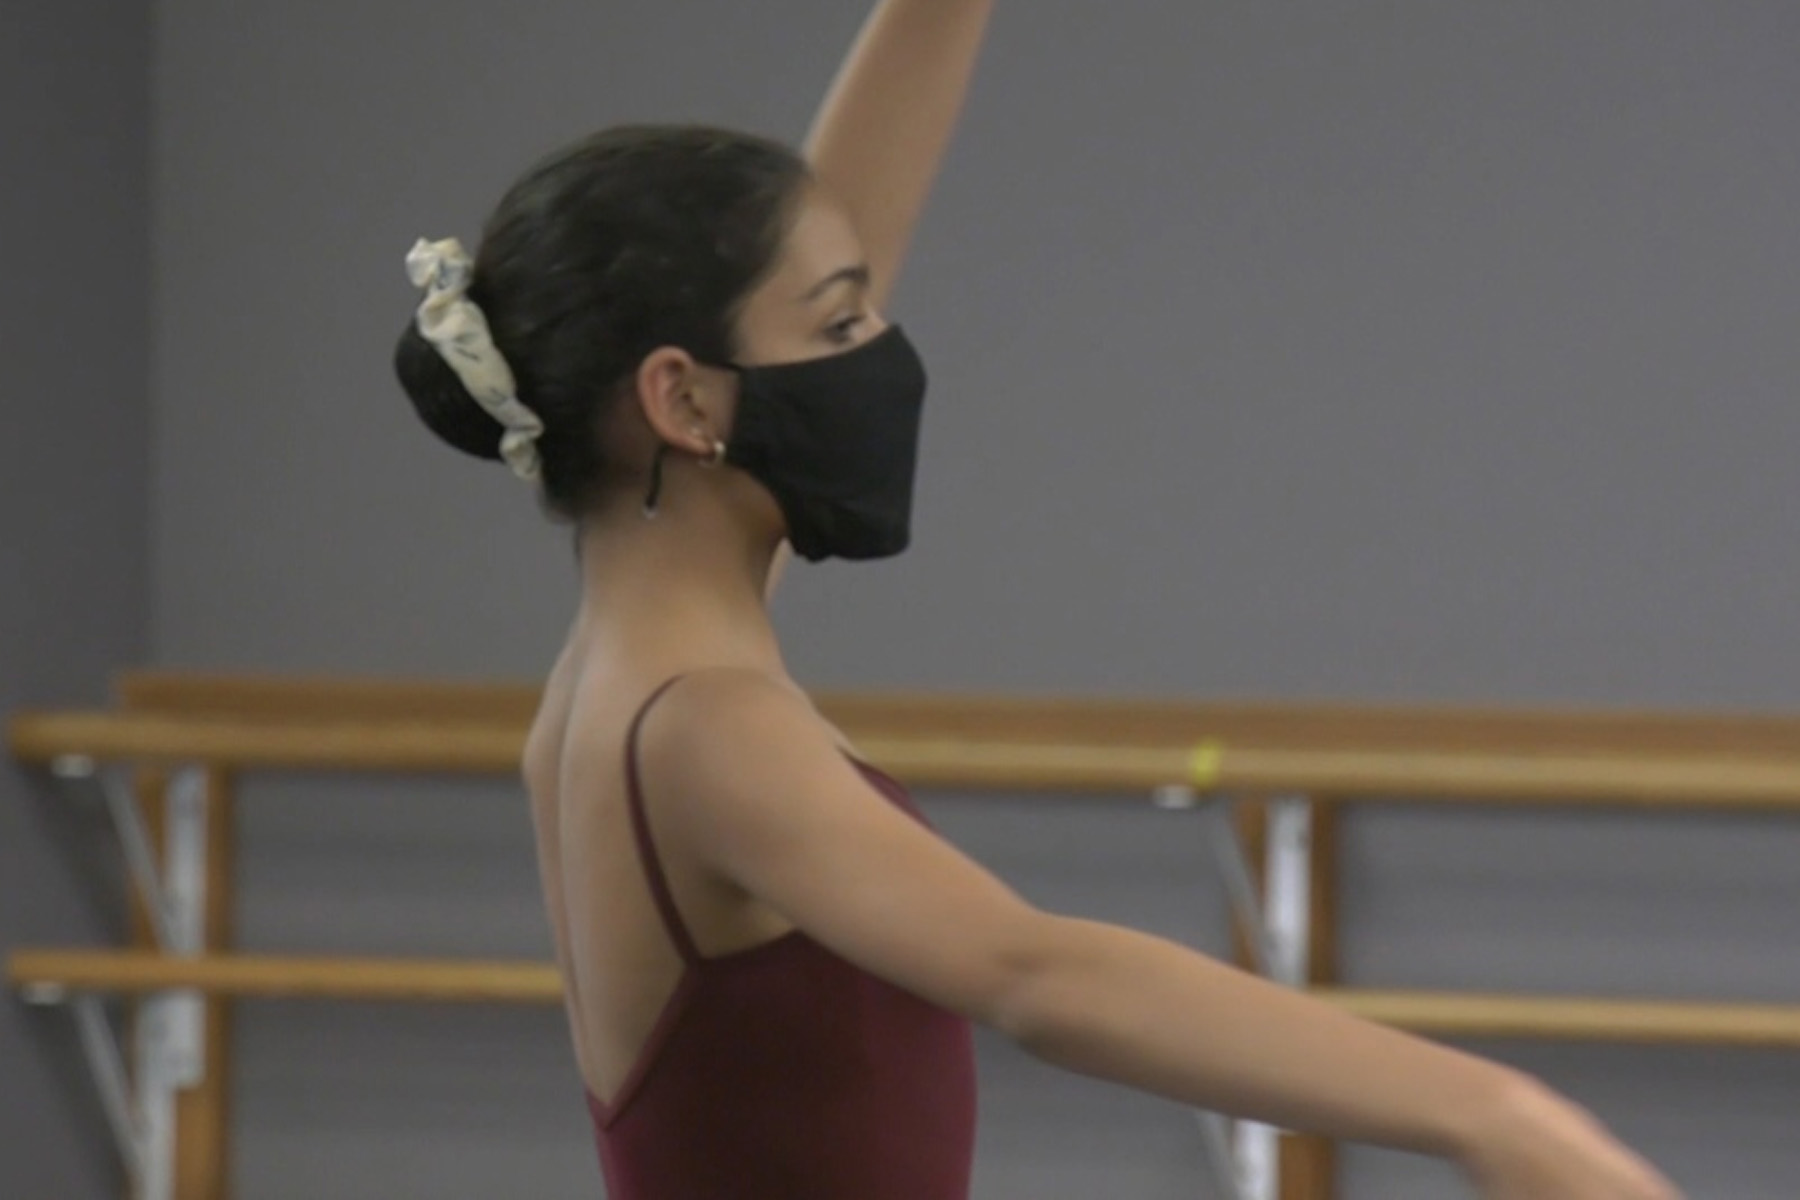 استودیو های رقص بریتیش کلمبیا نگران تعطیلی مراکز خود هستند